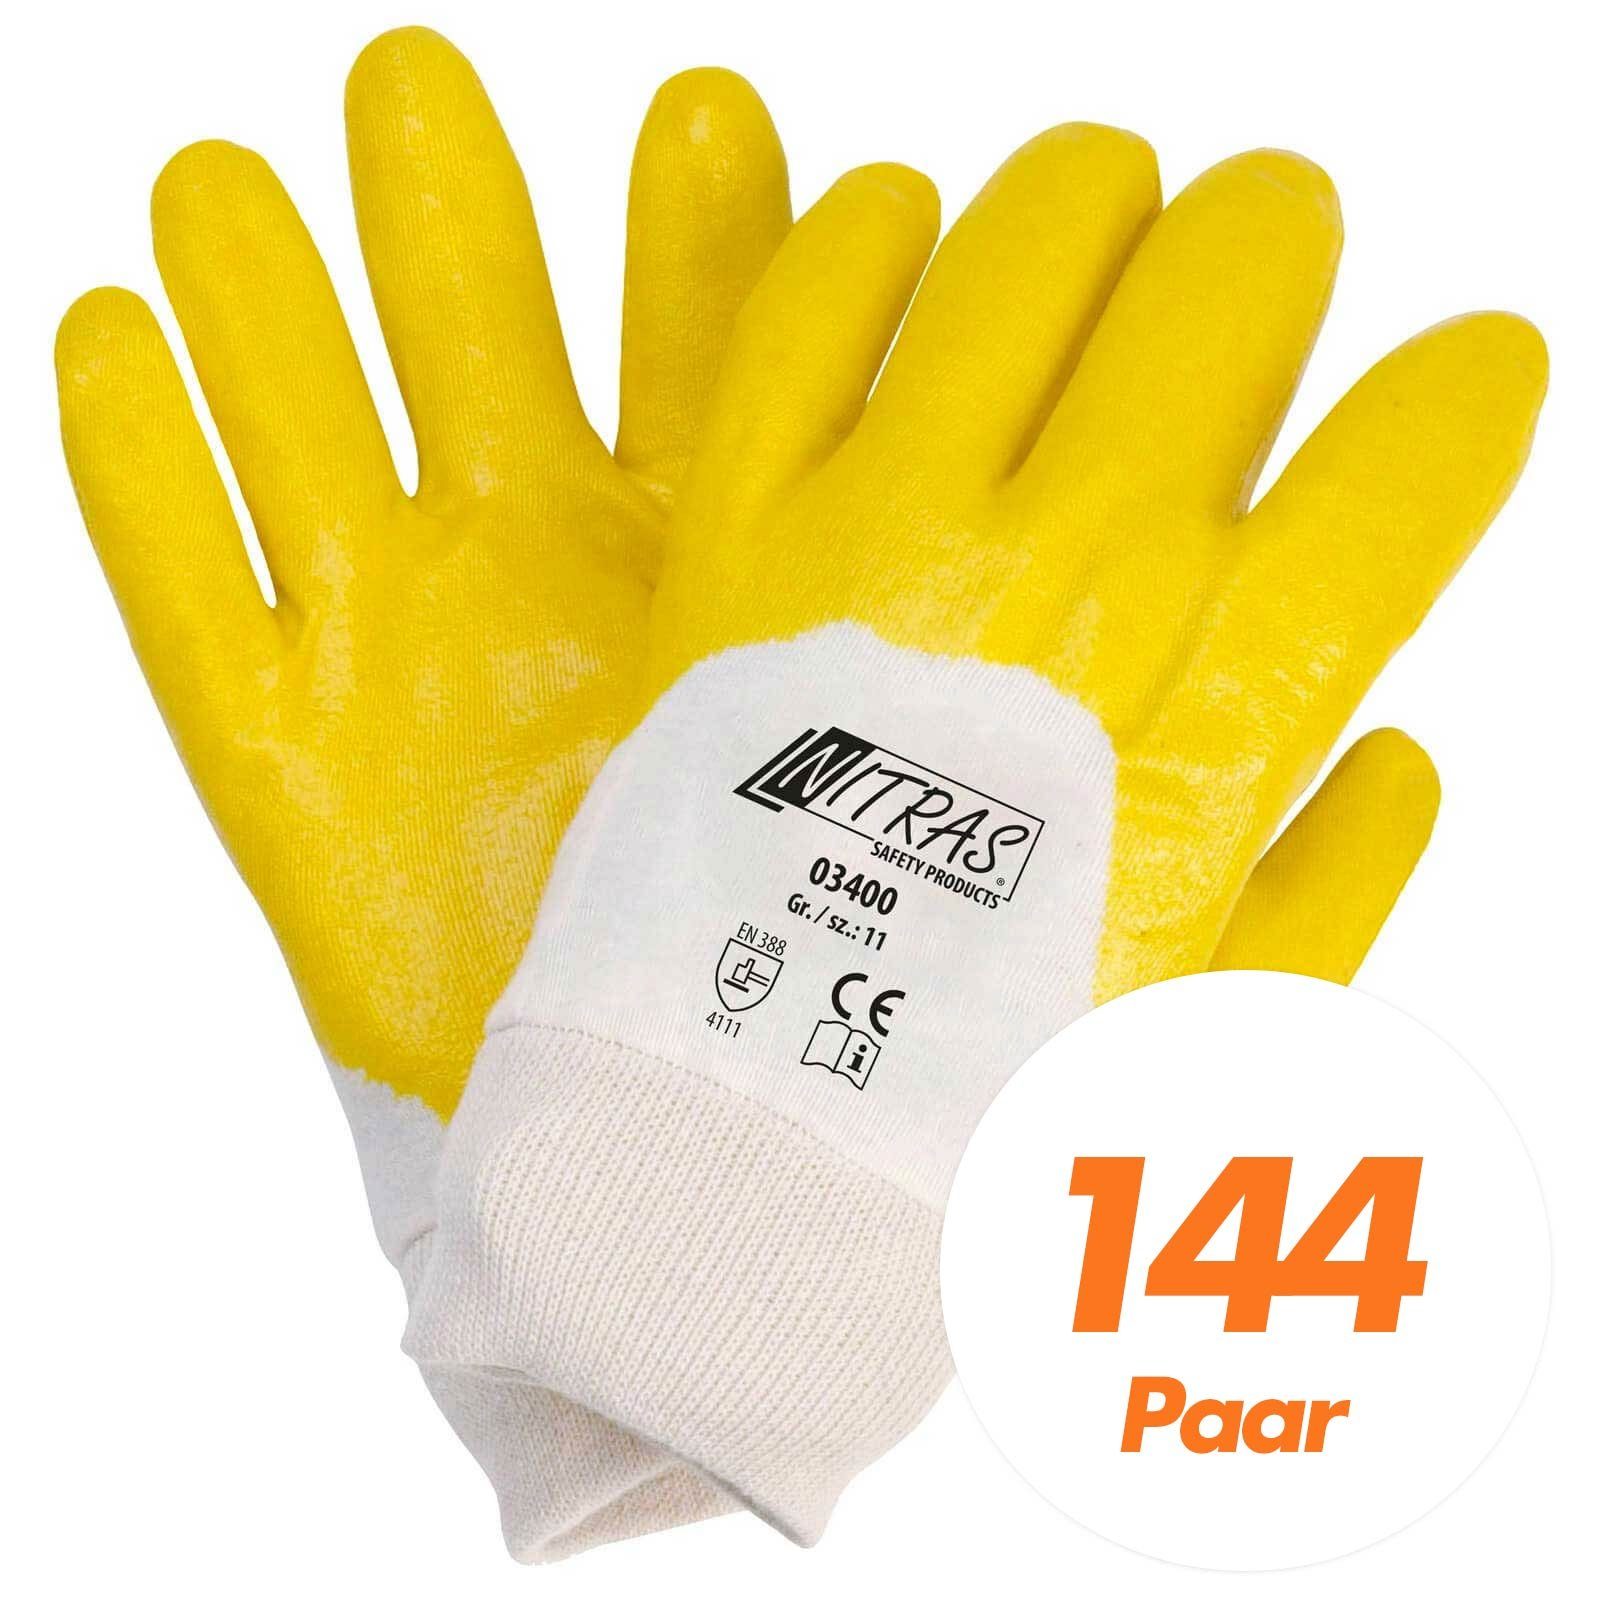 Nitras Nitril-Handschuhe NITRAS 03400 Nitrilhandschuhe Handschuhe teilbeschichtet - 144 Paar (Spar-Set)